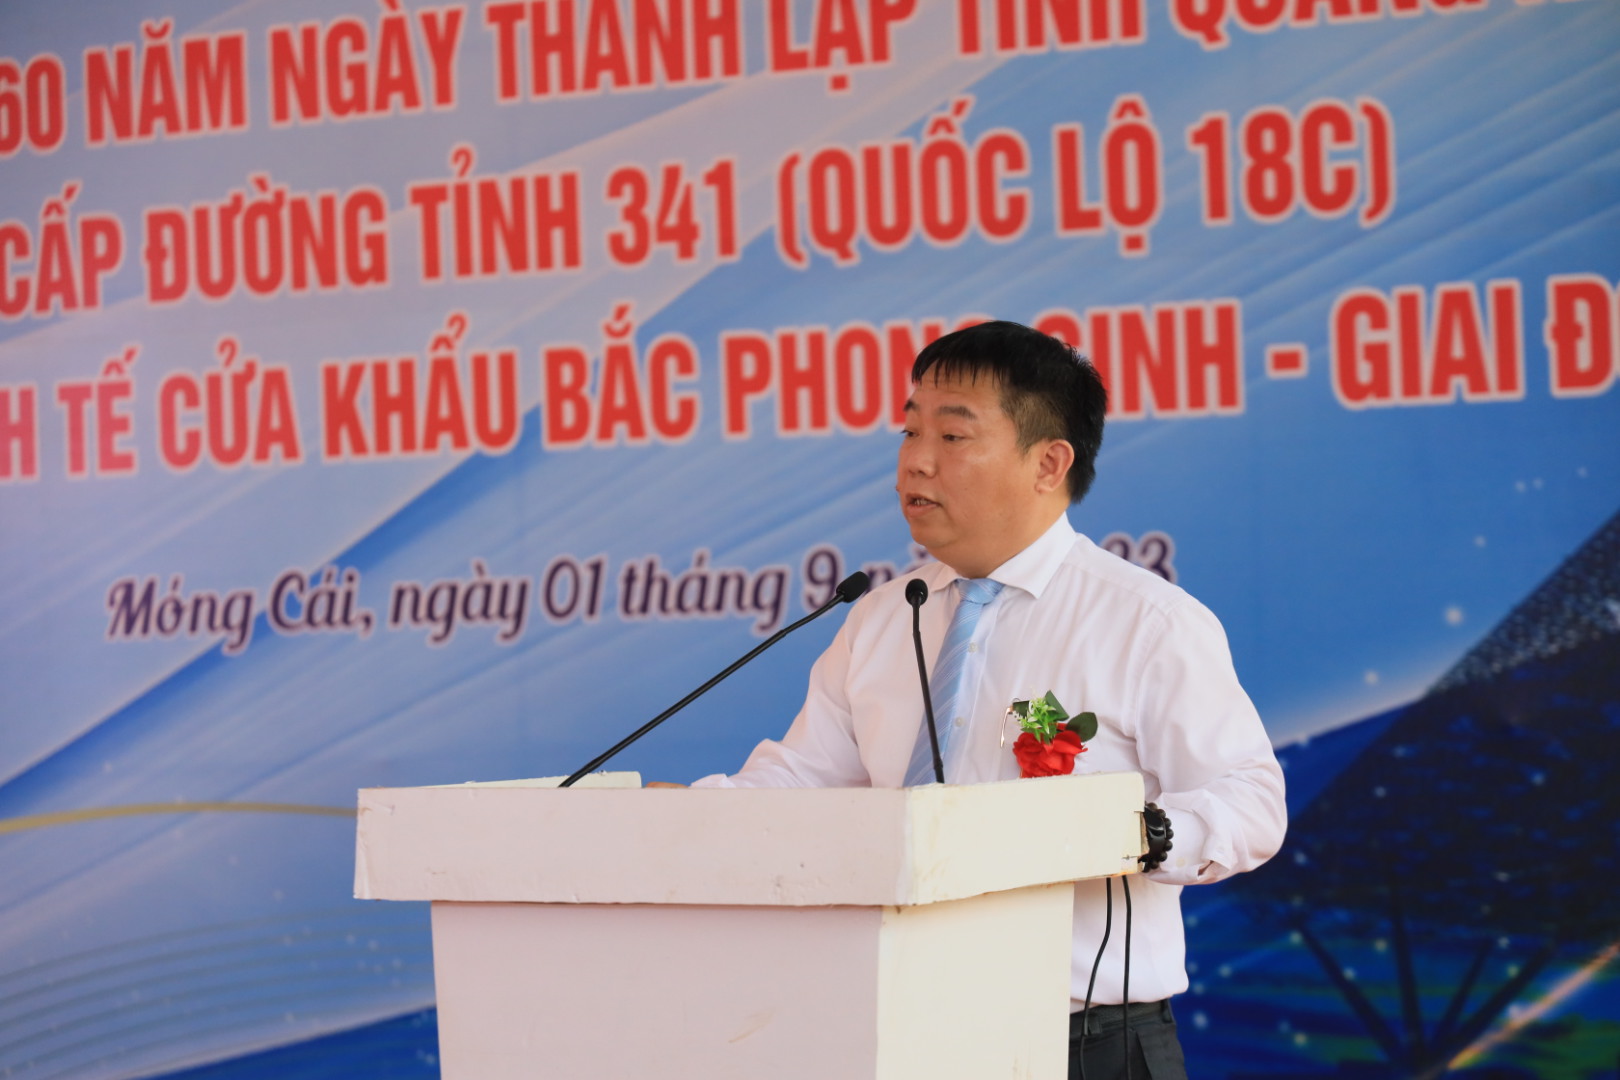 Ông Hoàng Trung Kiên, Trưởng ban Ban Quản lý Khu kinh tế Quảng Ninh chia sẻ tại lễ khánh thành. Ảnh: Thu Lê,